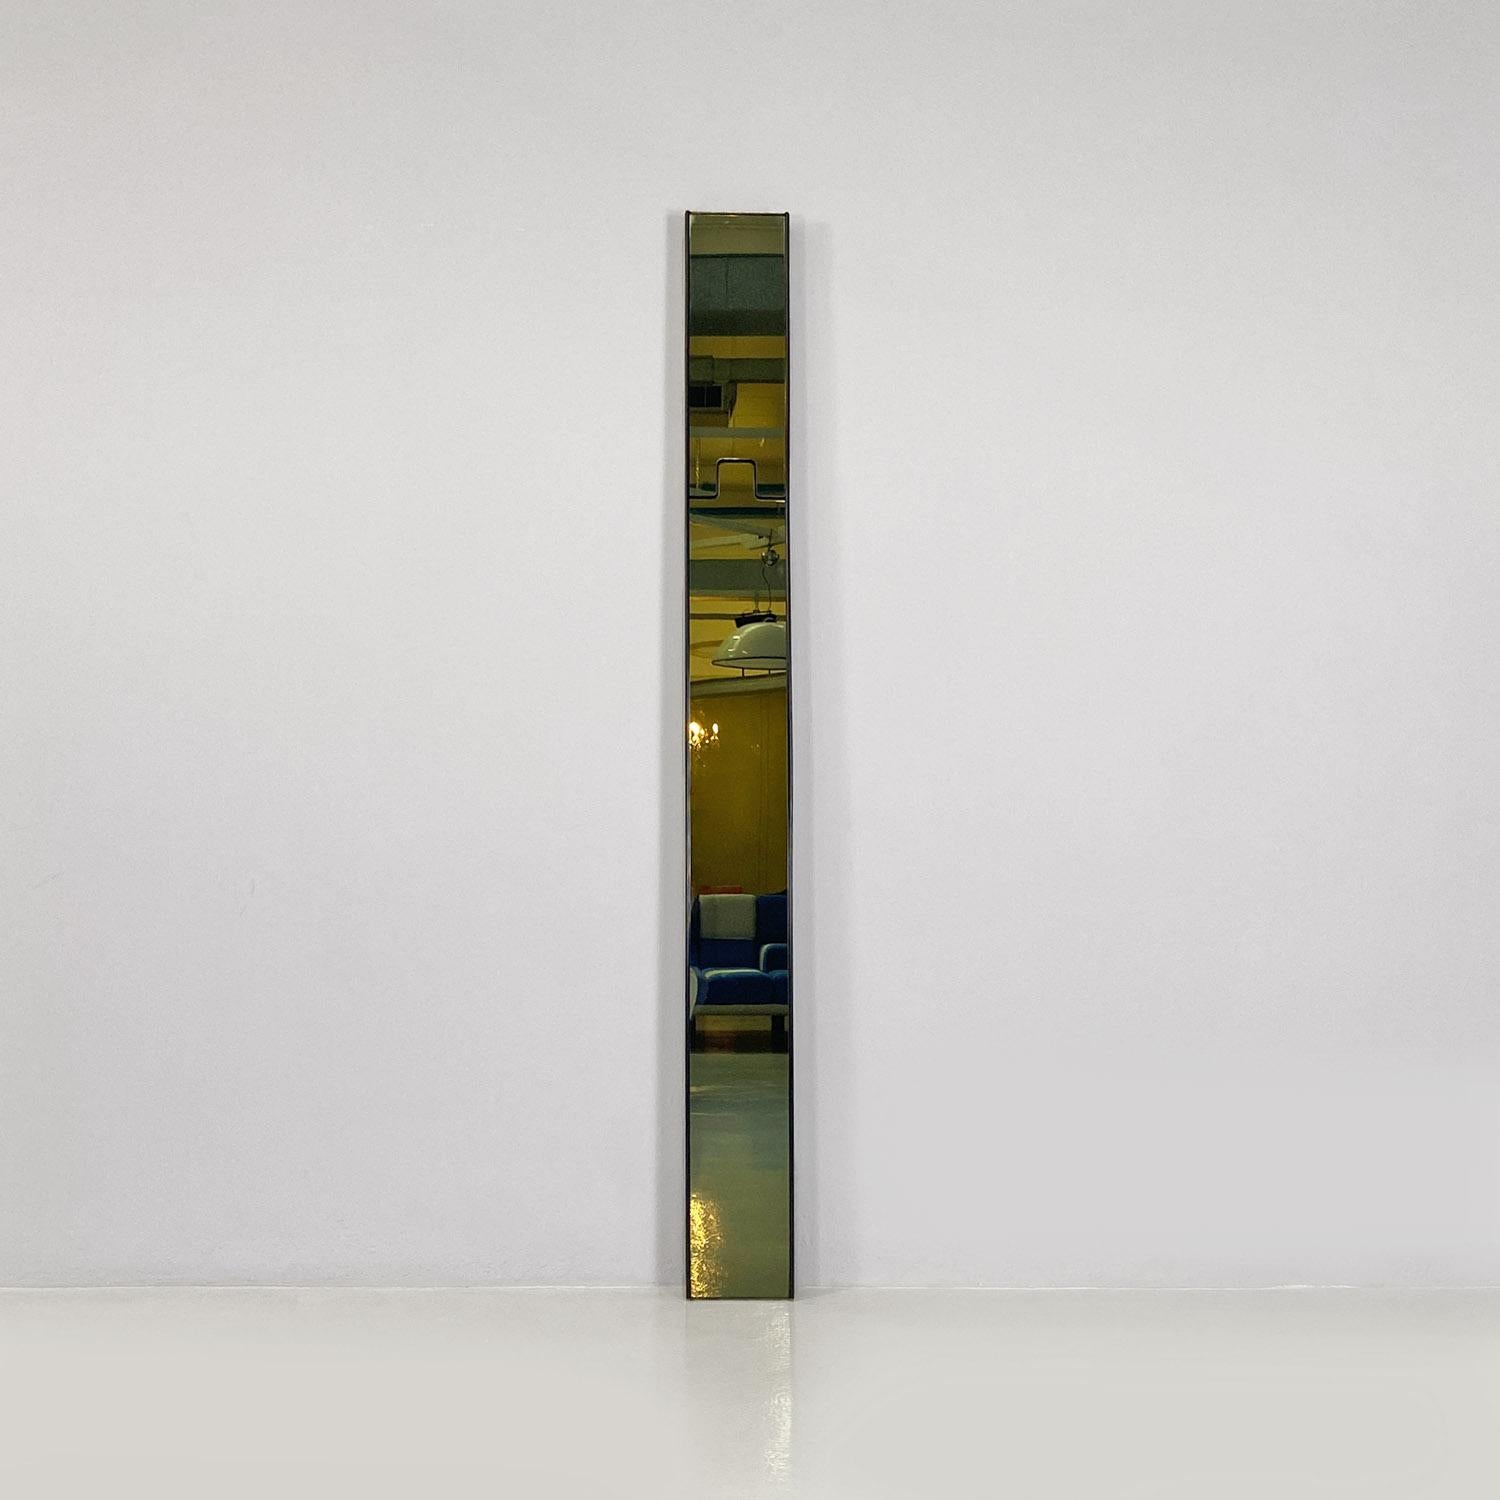 Miroir mural modèle Gronda composé de quatre modules rectangulaires en verre fumé, avec structure d'encadrement en plastique noir. La particularité de ce miroir est qu'il dispose d'un crochet rétractable, qui peut être utilisé comme portemanteau.